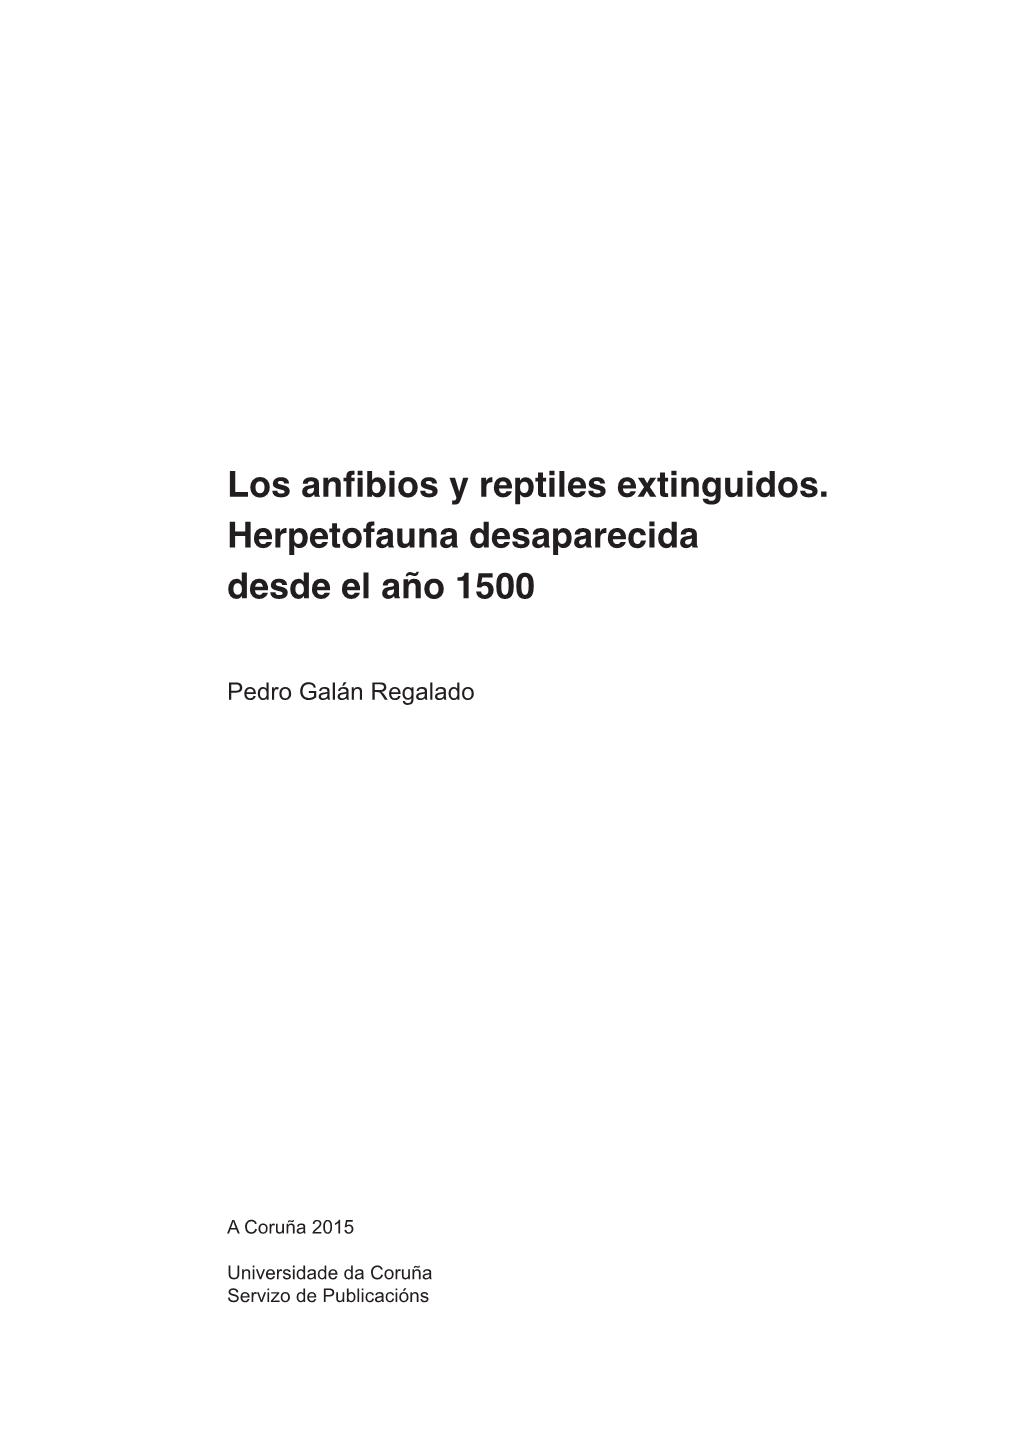 Los Anfibios Y Reptiles Extinguidos. Herpetofauna Desaparecida Desde El Año 1500